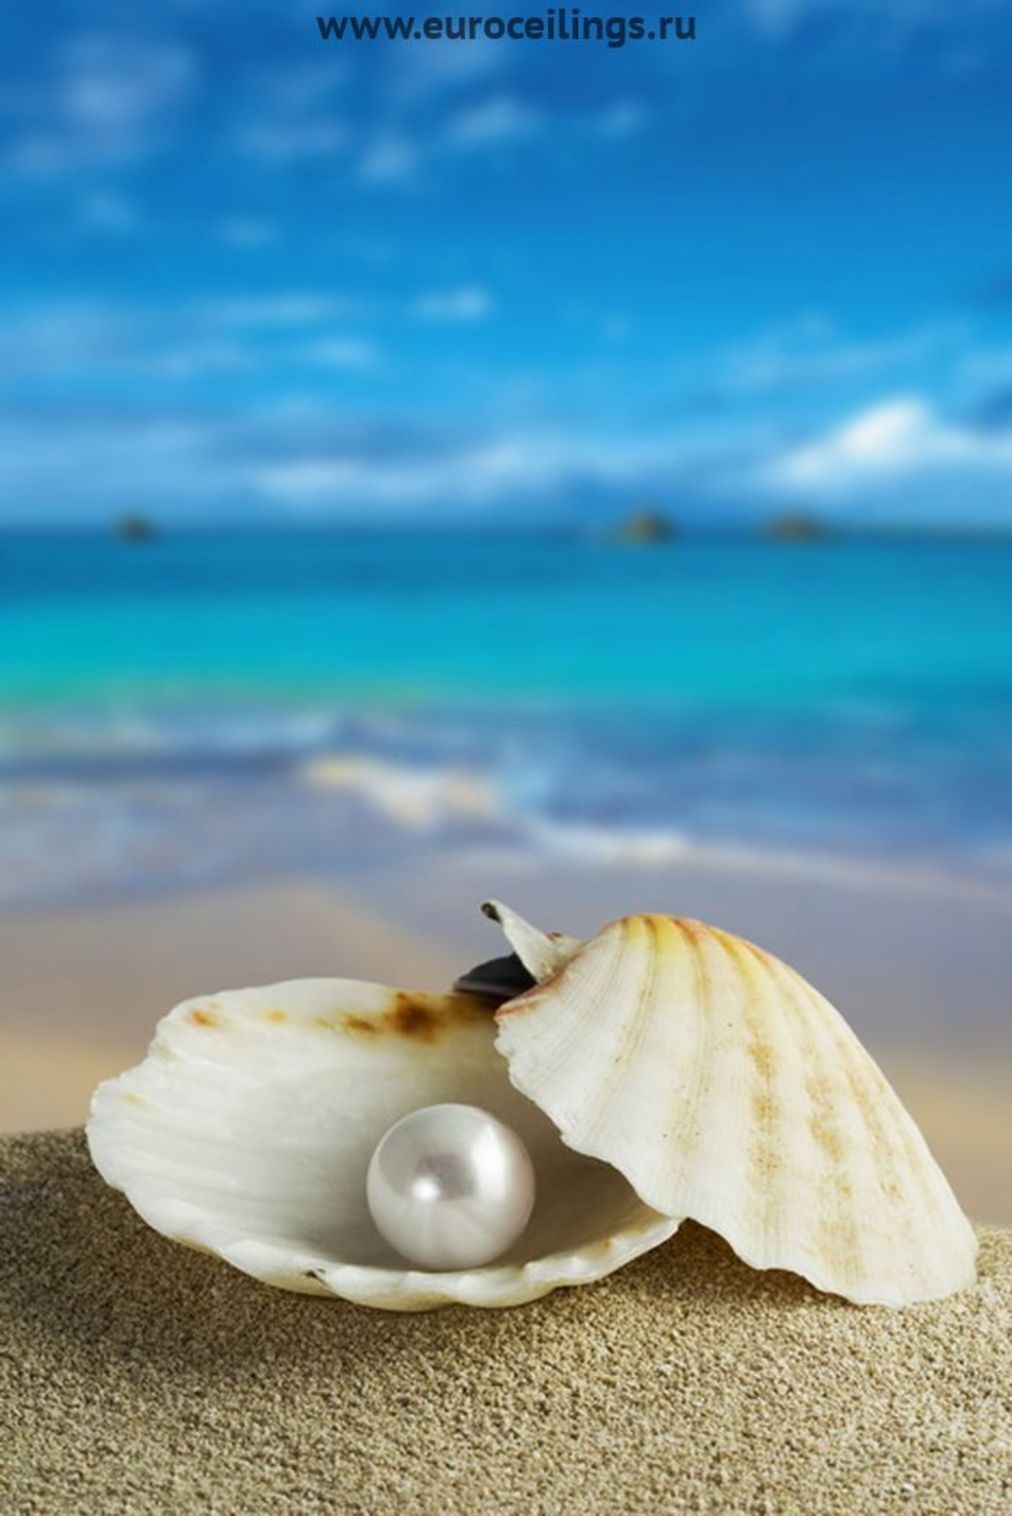 下载手机图片 背景 海 壳 珍珠 免费